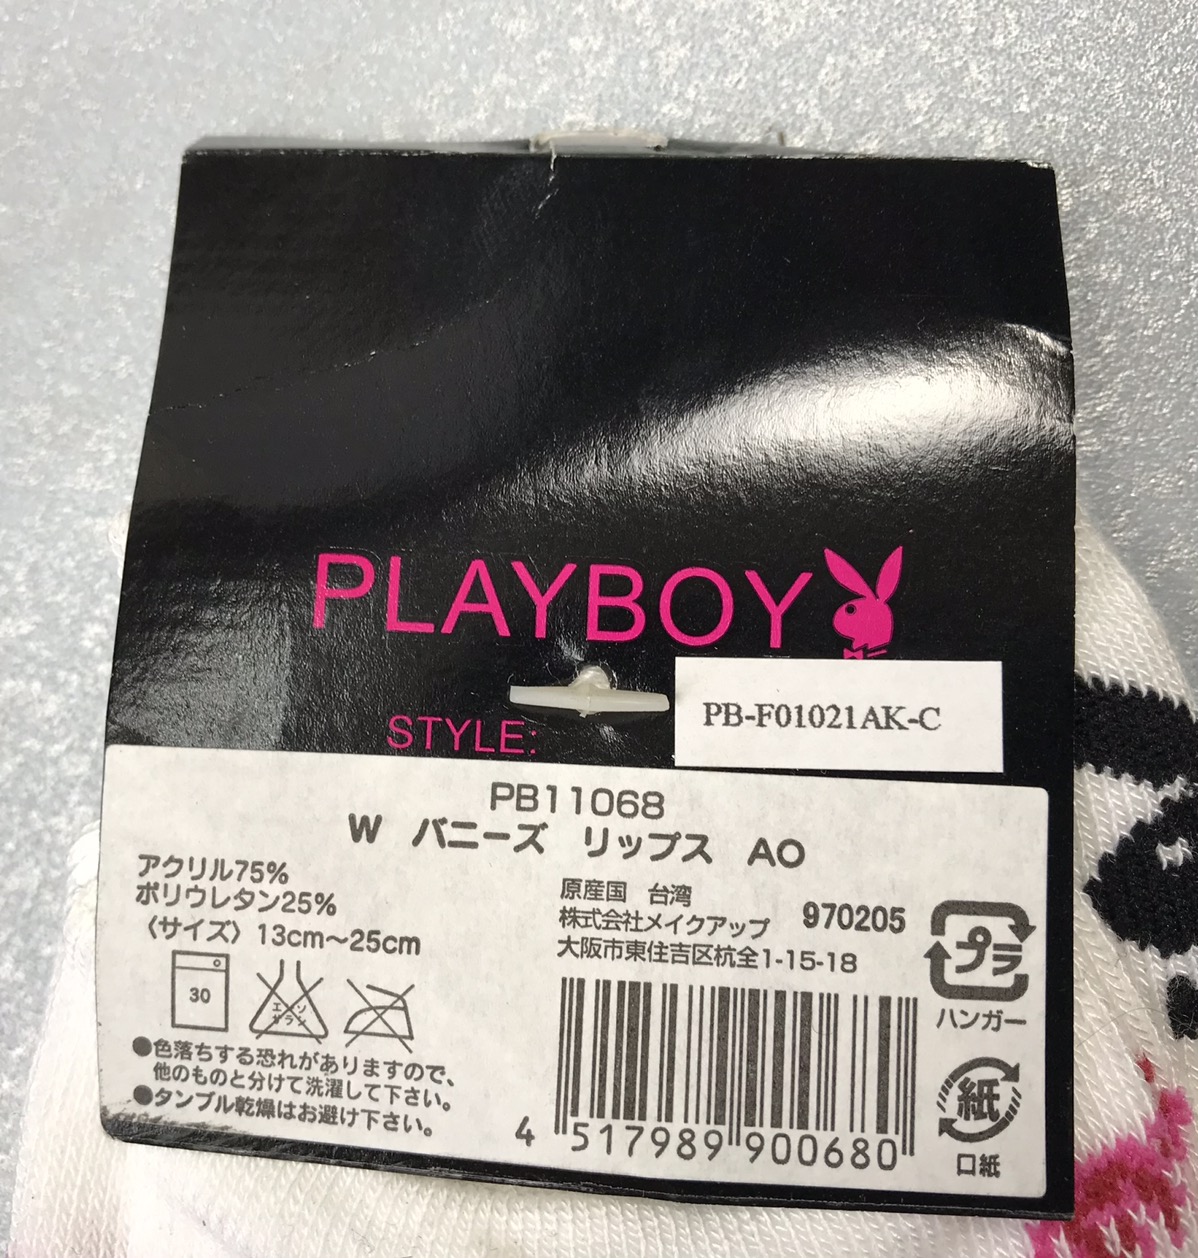 Playboy - playboy socks nwt - 3